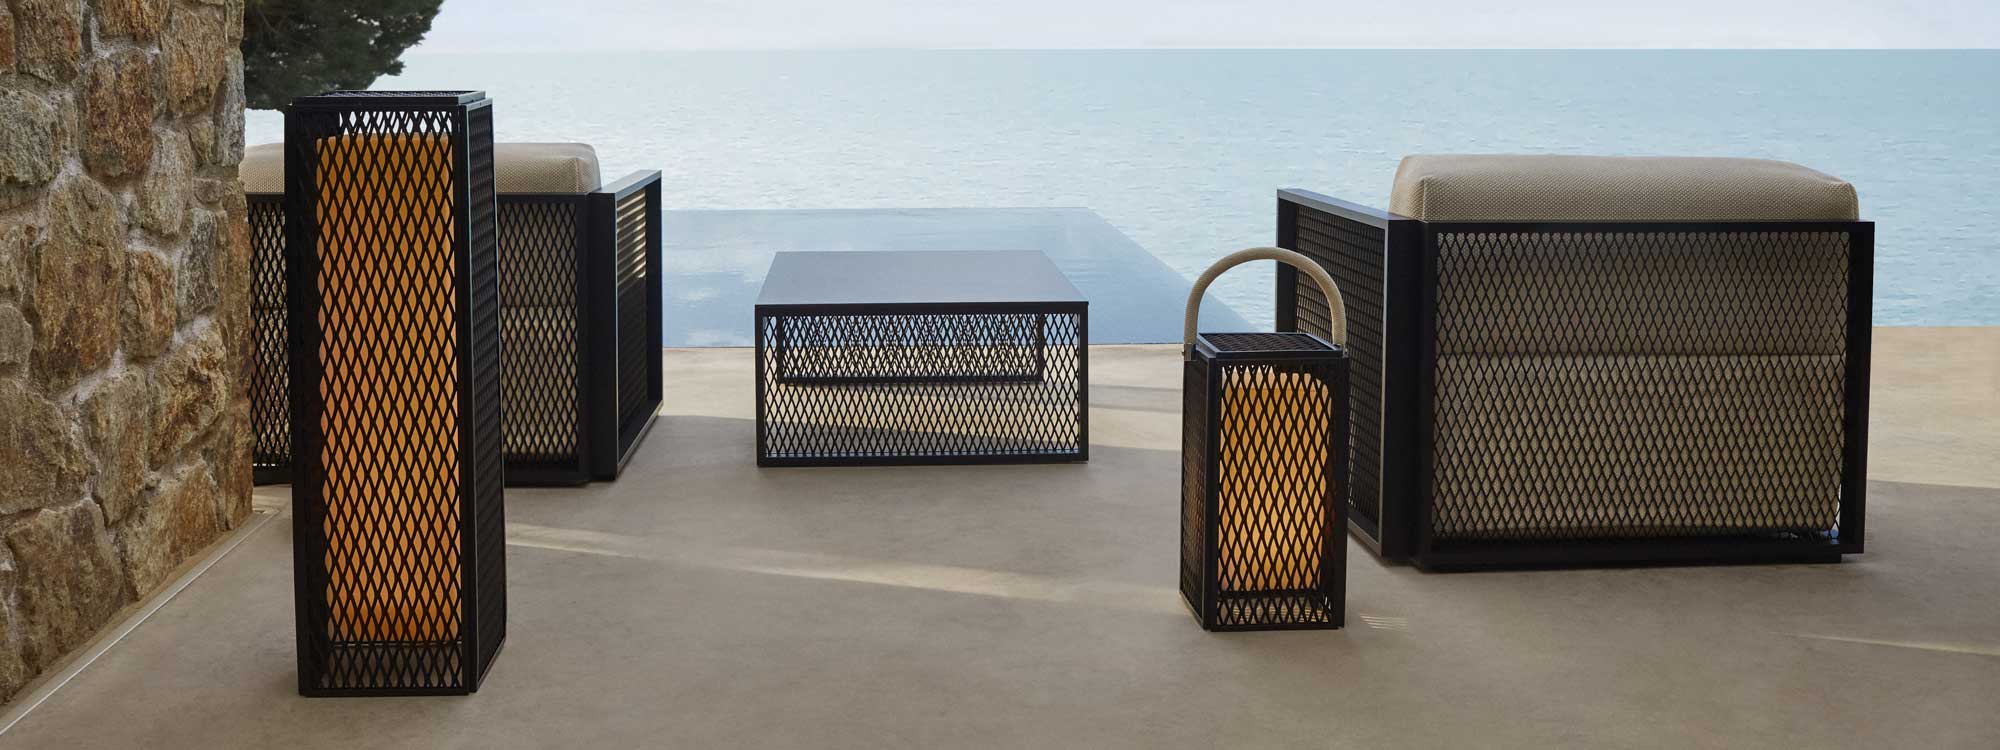 Image of Vondom The Factory minimalist garden lanterns & outdoor lounge furniture